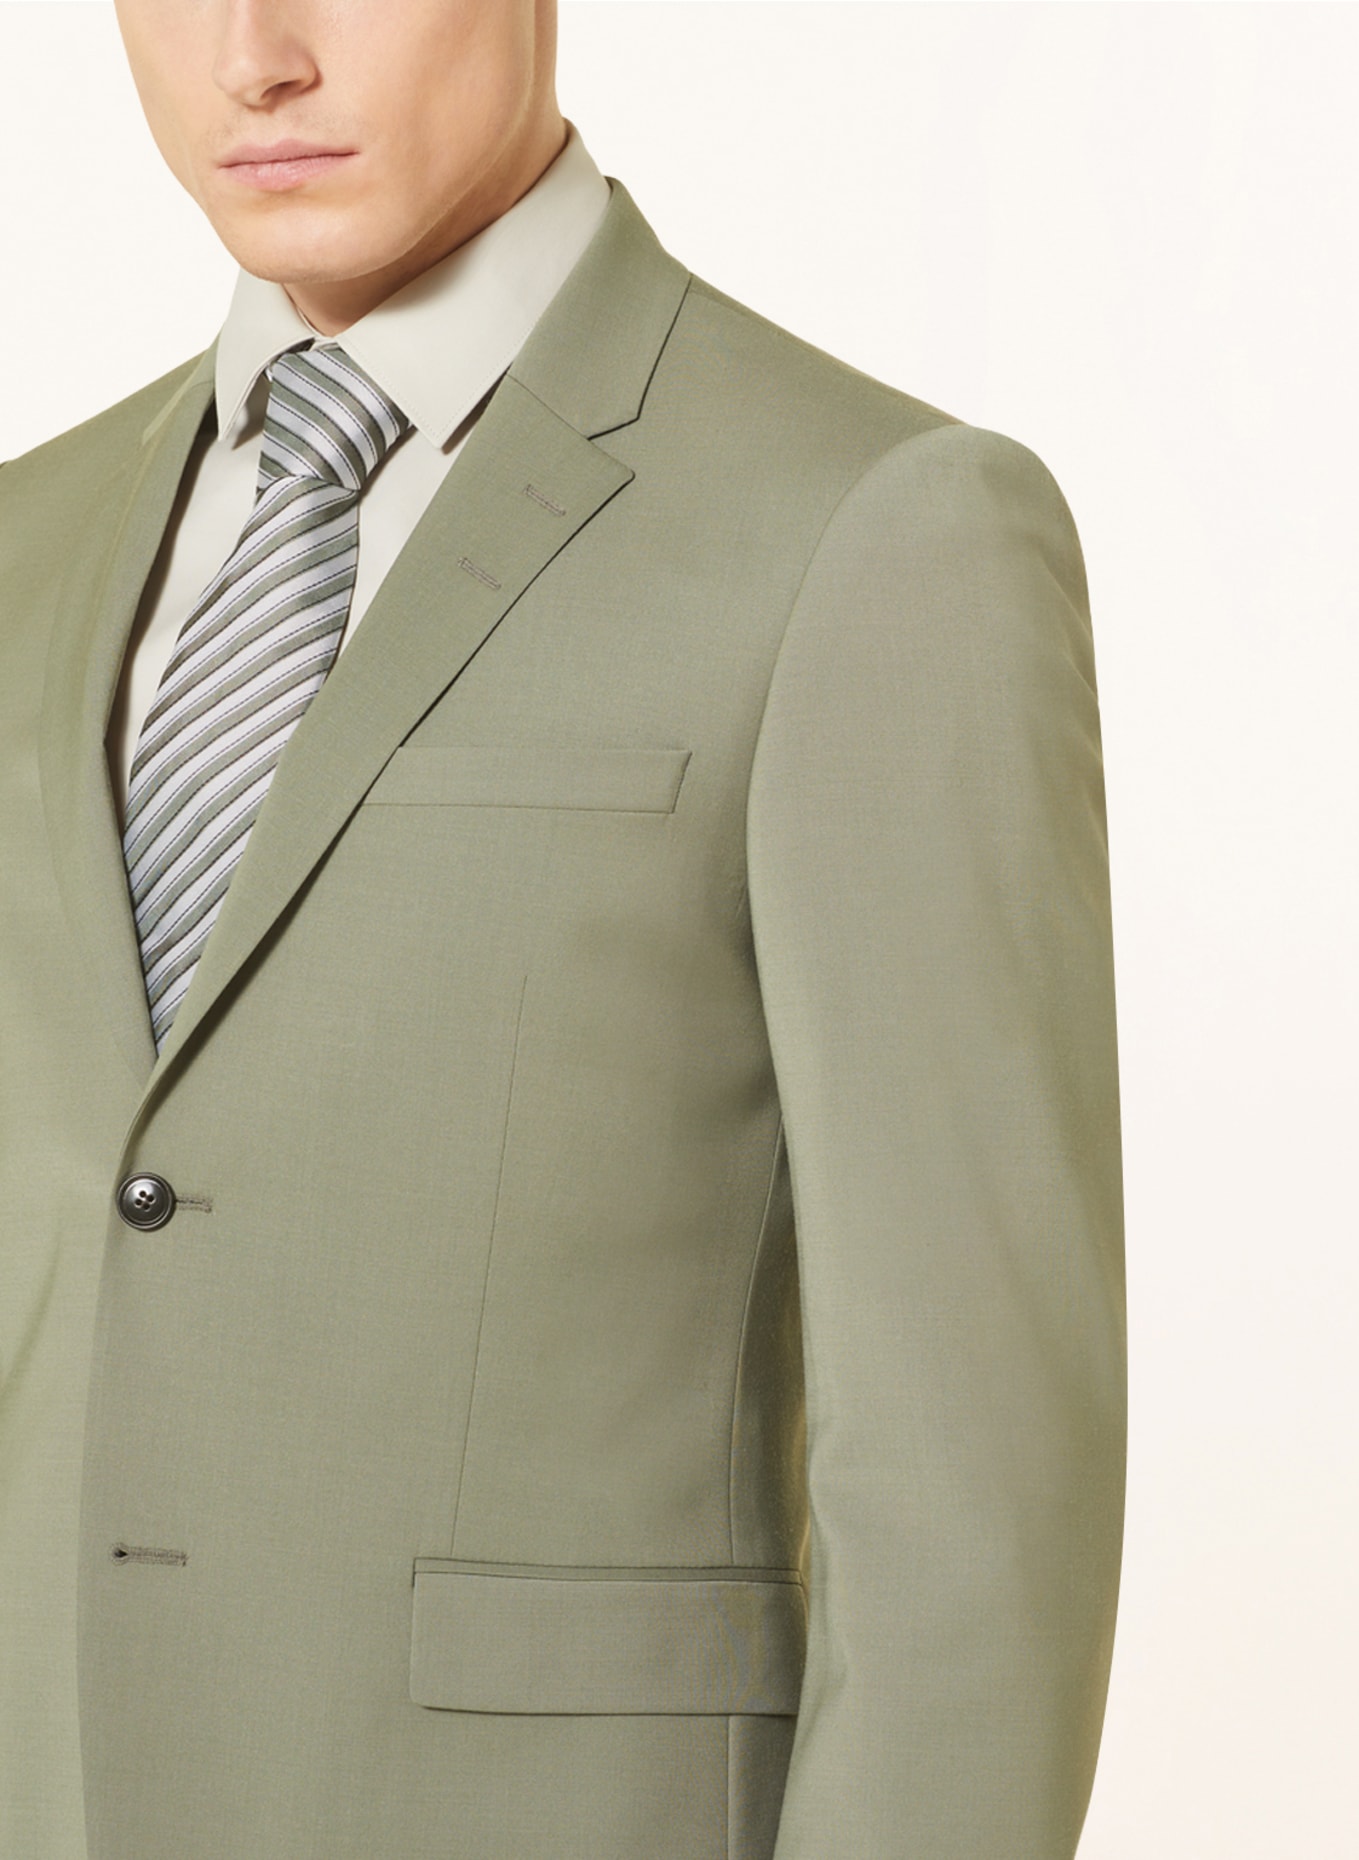 TIGER OF SWEDEN Anzugsakko JERRETTS Extra Slim Fit, Farbe: 46B Uniform Green (Bild 5)